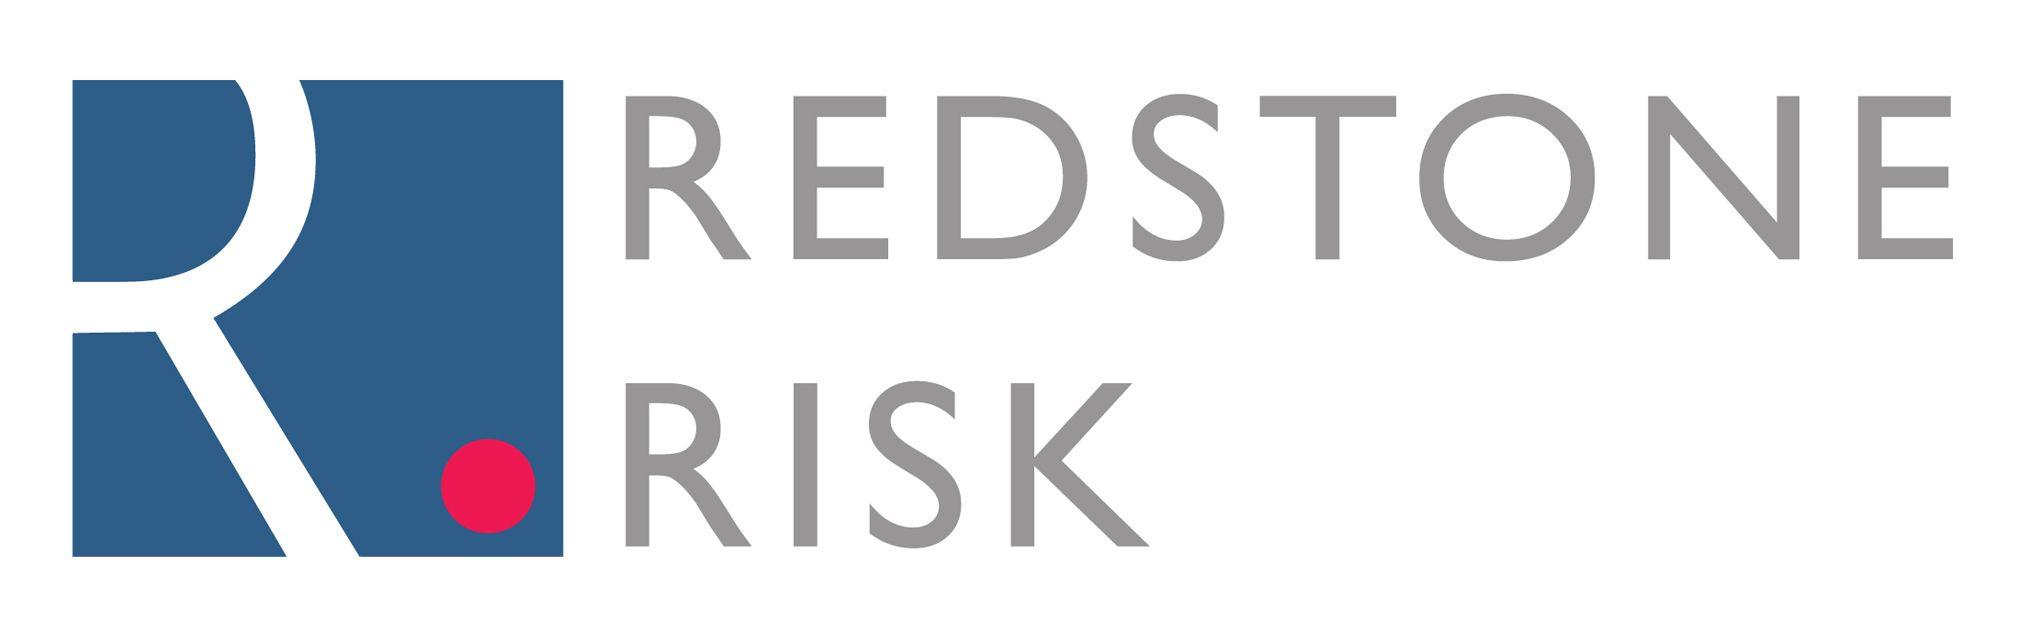 Risk Logo - Home